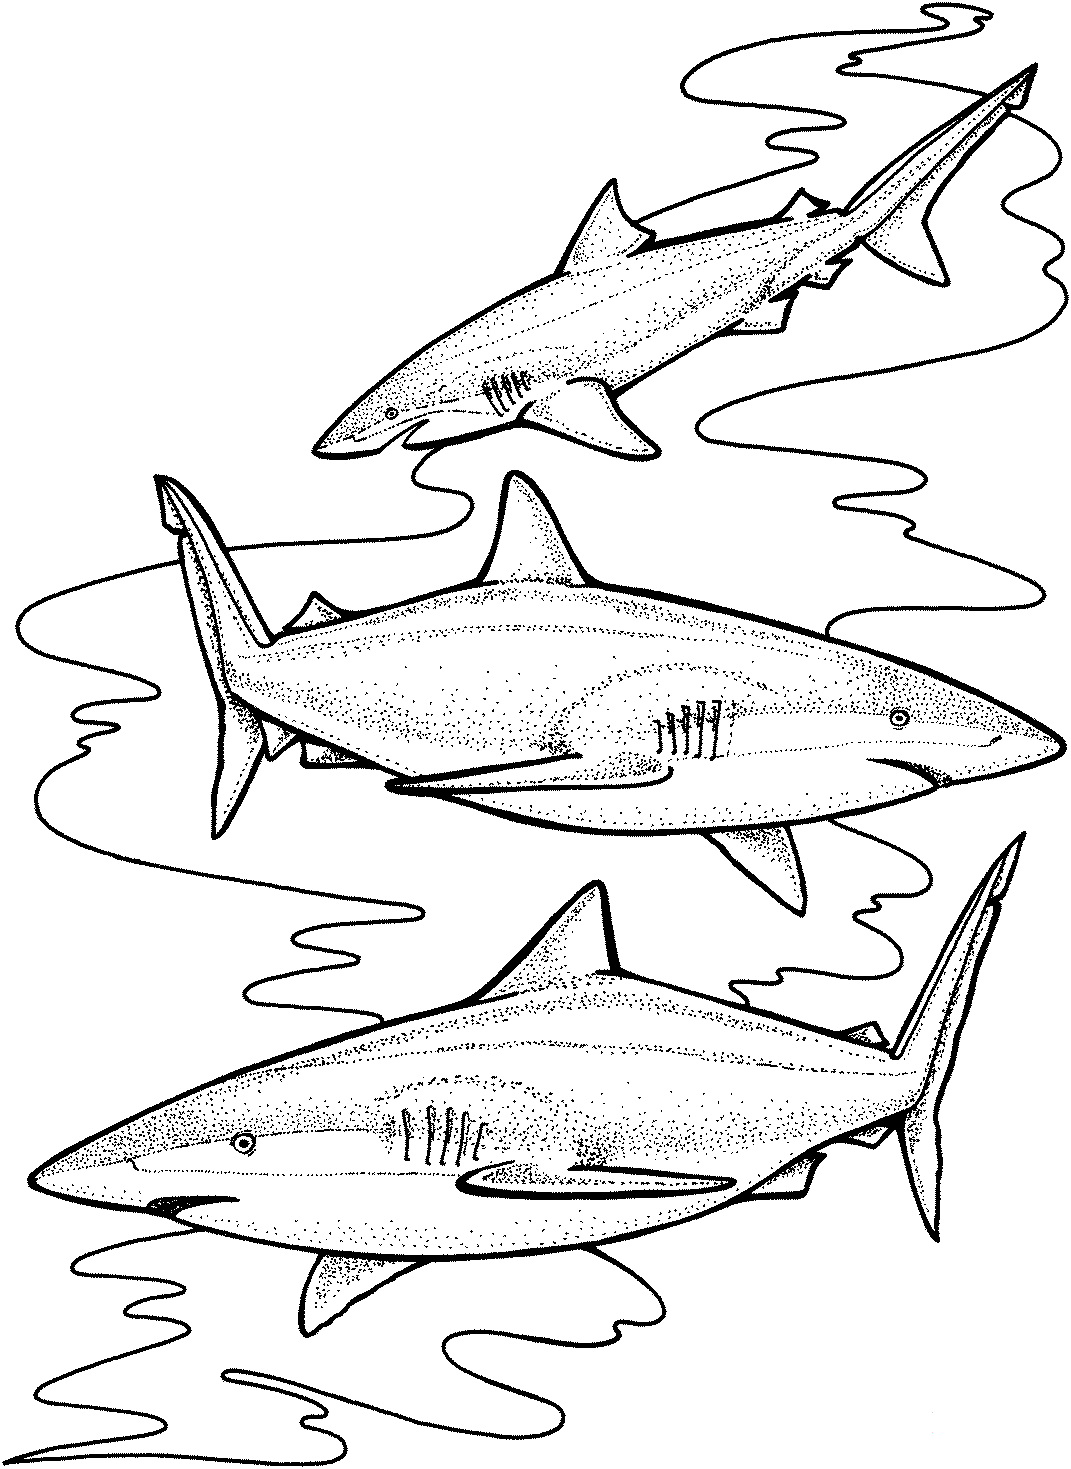 三只虎鲨可能专门捕食鲨鱼的某些高度可用的猎物